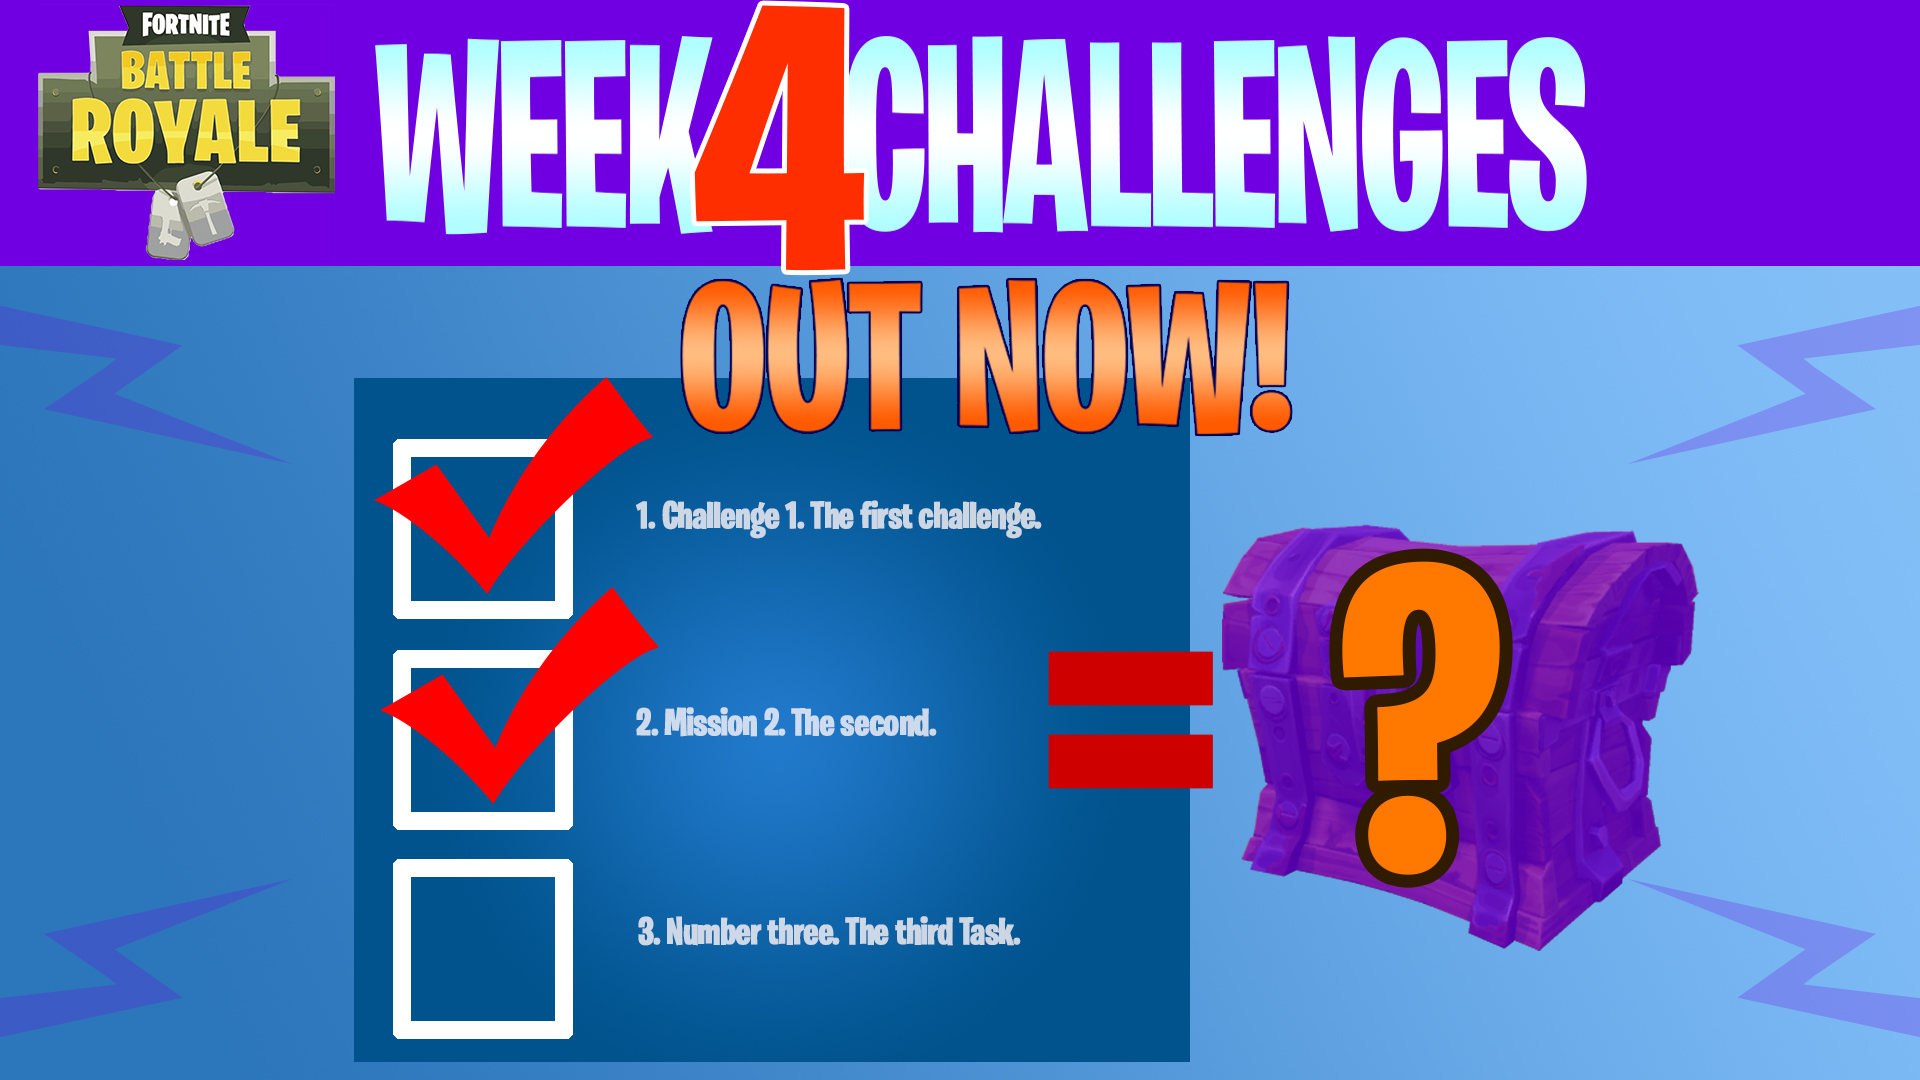 Fortnite season 6 week 4 challenges